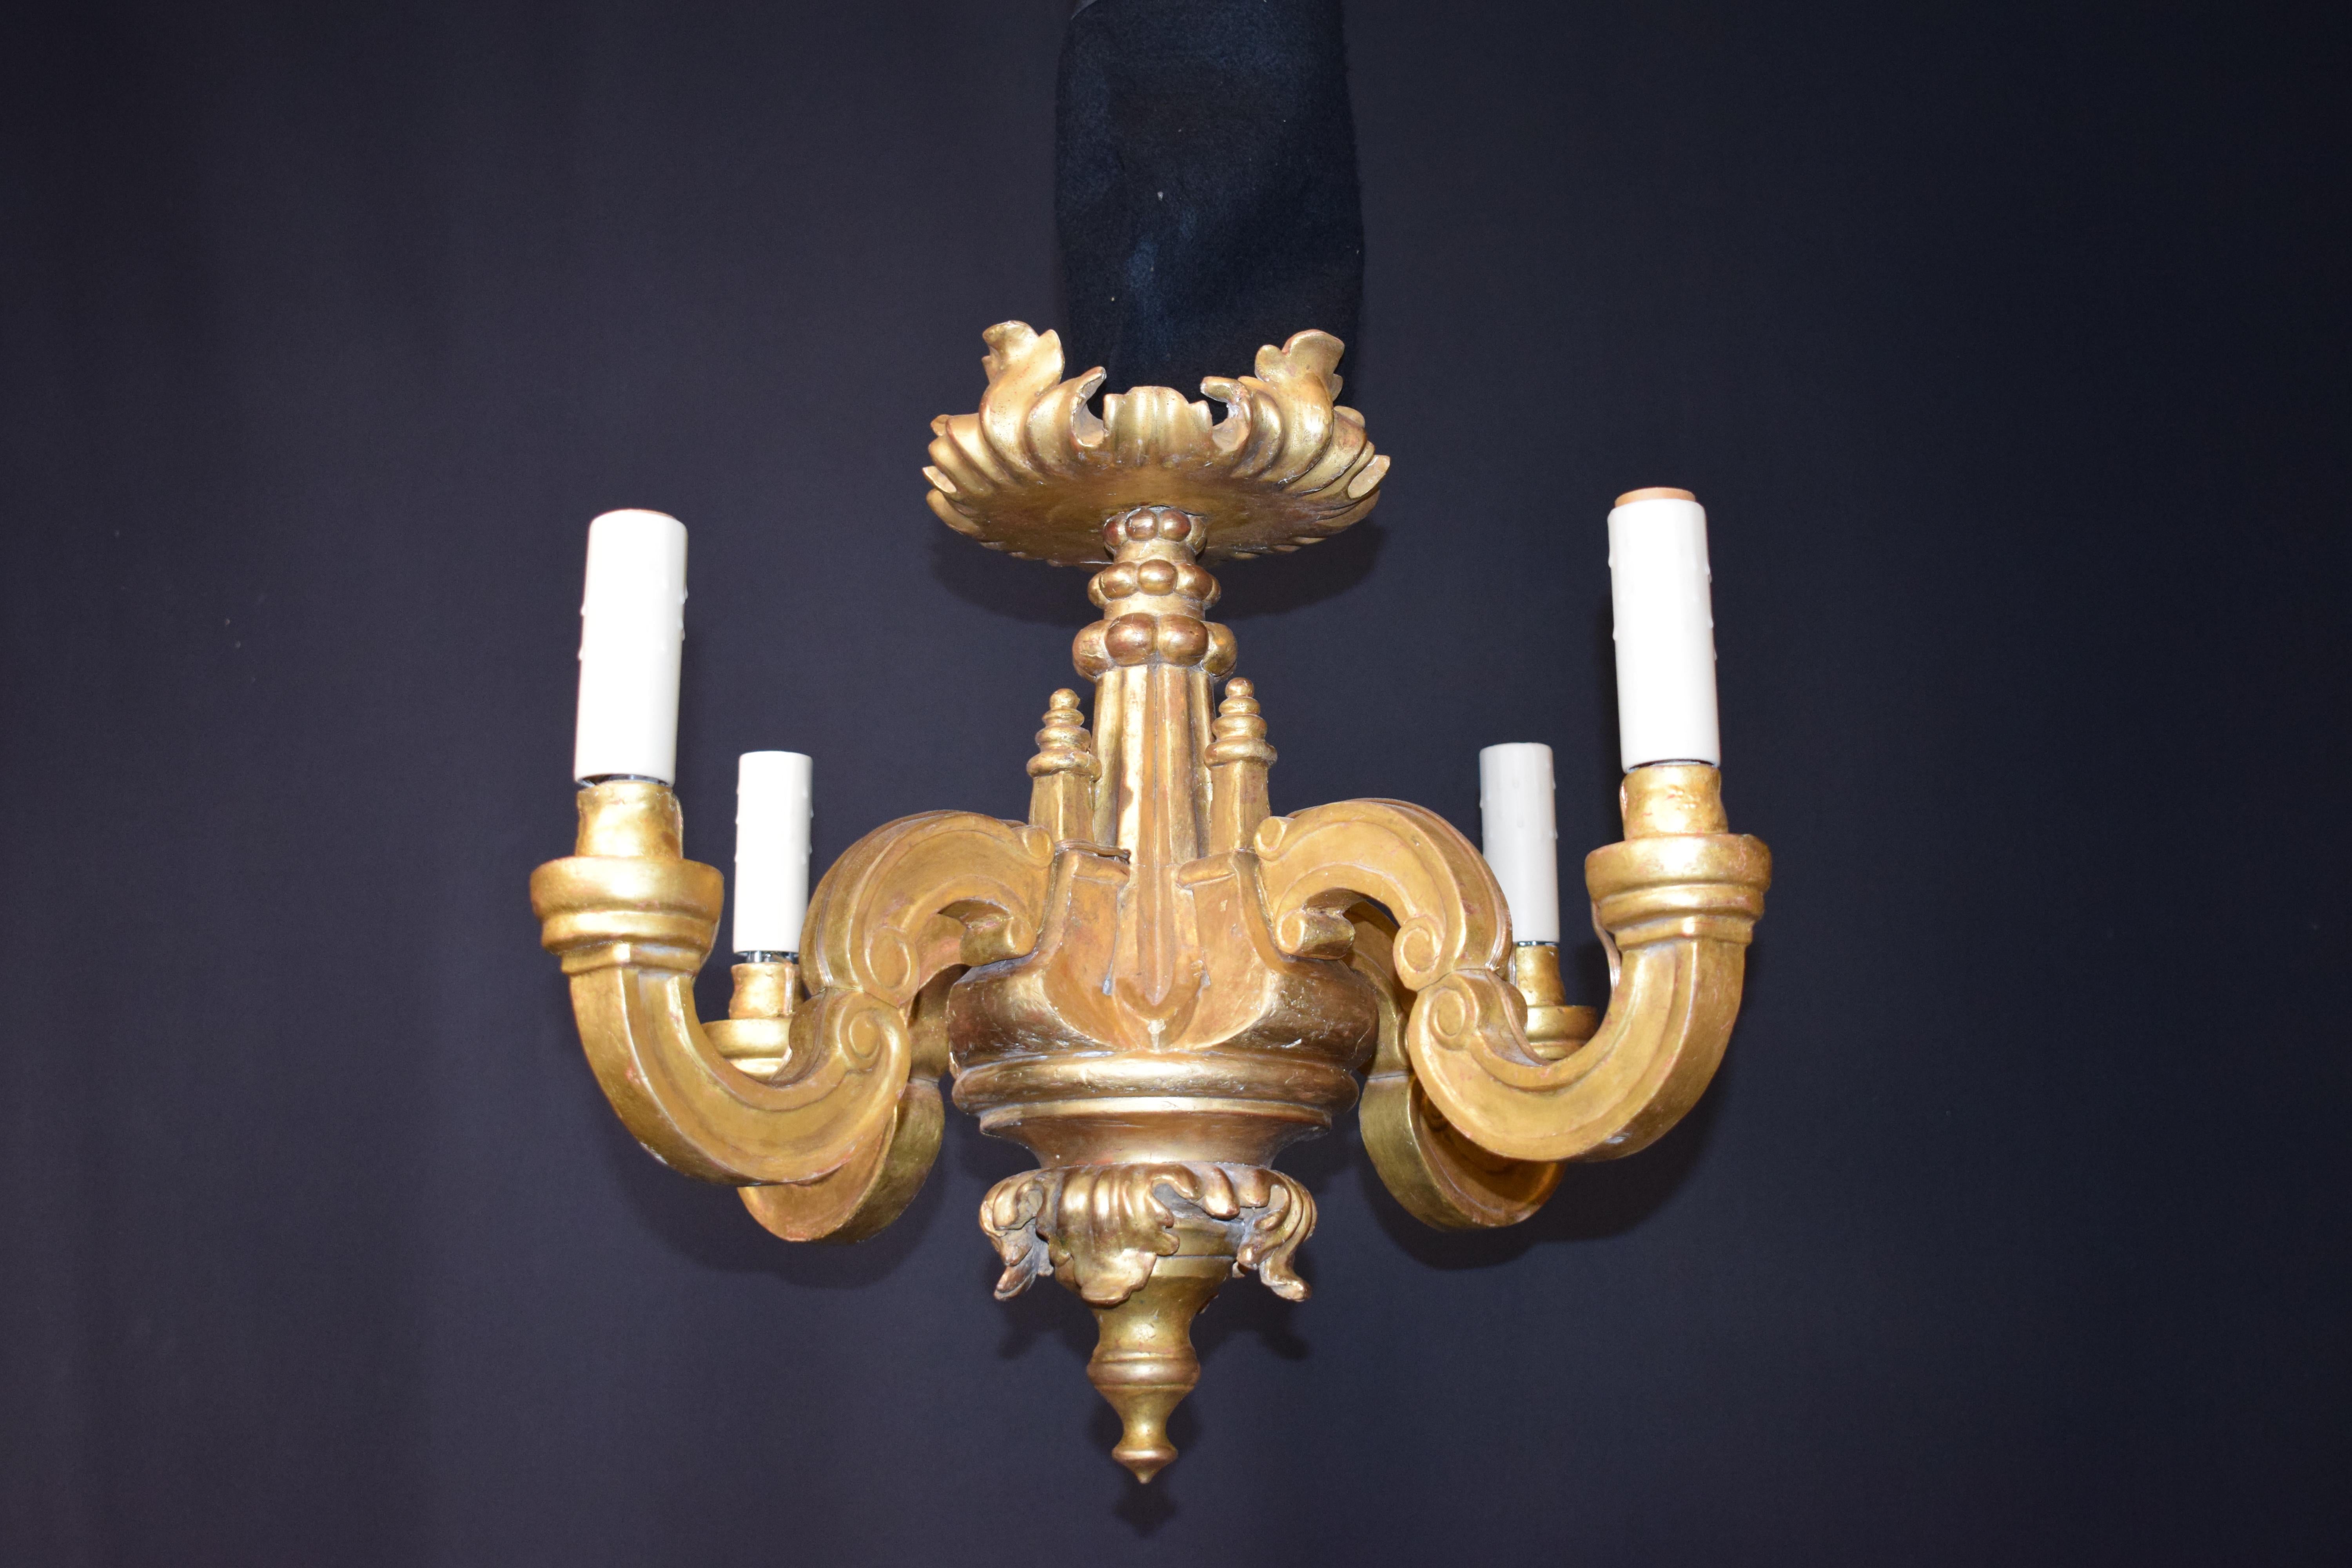 Ein sehr schöner geschnitzter und vergoldeter Holzlüster im Louis-XVI-Stil mit 24-karätiger Originalvergoldung. Für Kerzen gemacht, jetzt elektrifiziert. 4-Leuchten.
Abmessungen: Höhe 19 1/2